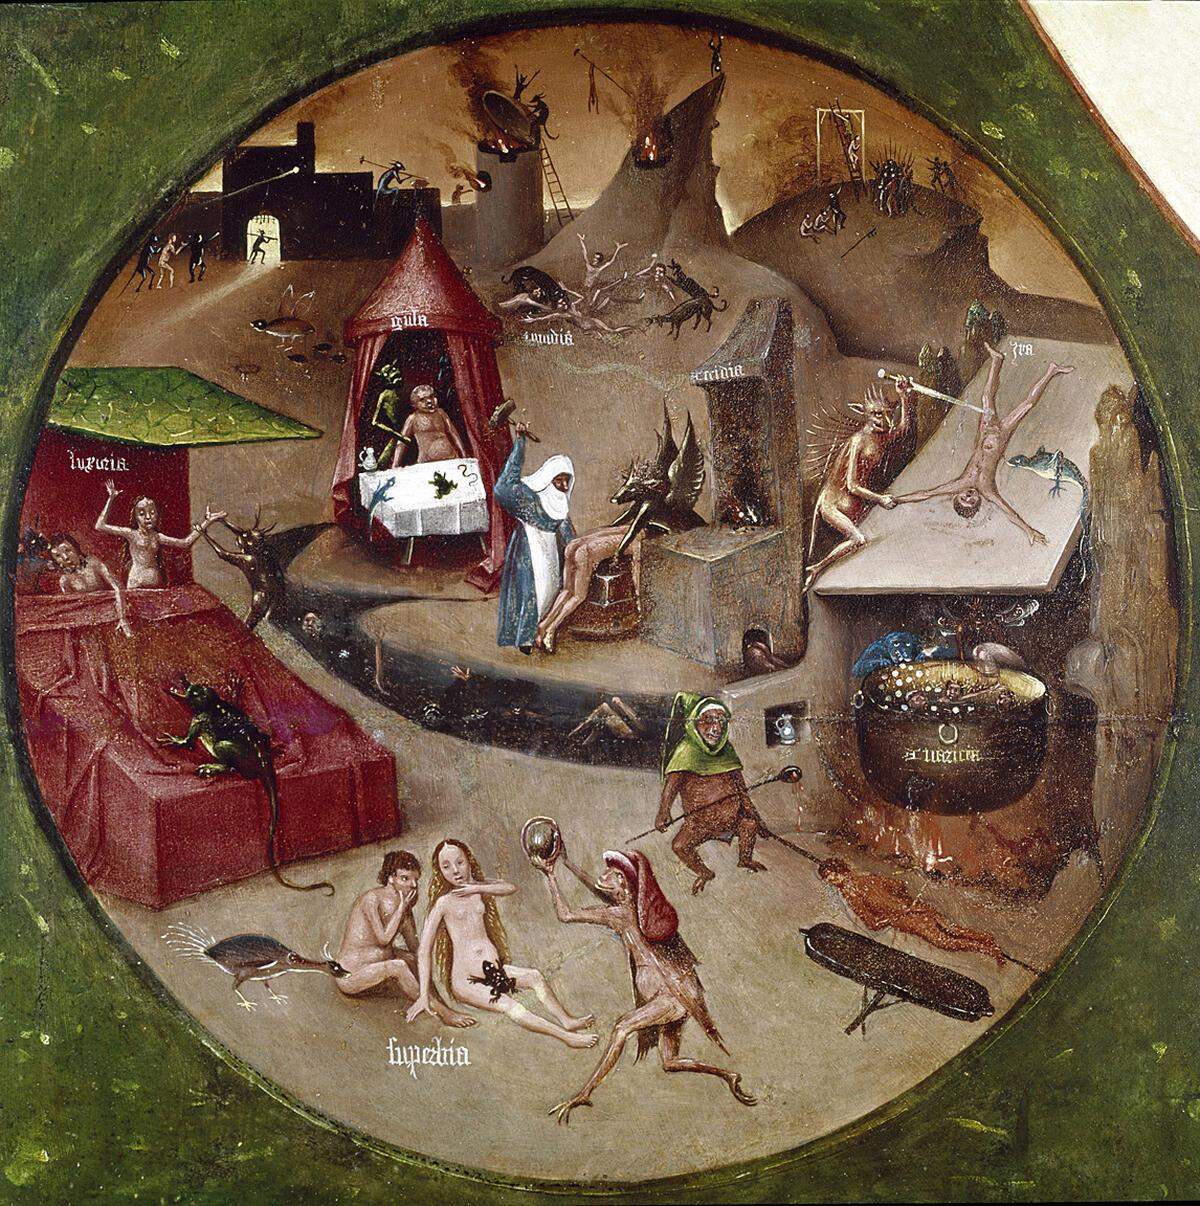 Detail aus "Die sieben Todsünden", das aus der Darstellung der sieben Todsünden und der "vier letzten Dinge" besteht, darunter - wie könnte es anders sein - auch wieder mal eine Hölle (im Bild). Die malte Bosch offenbar bevorzugt.